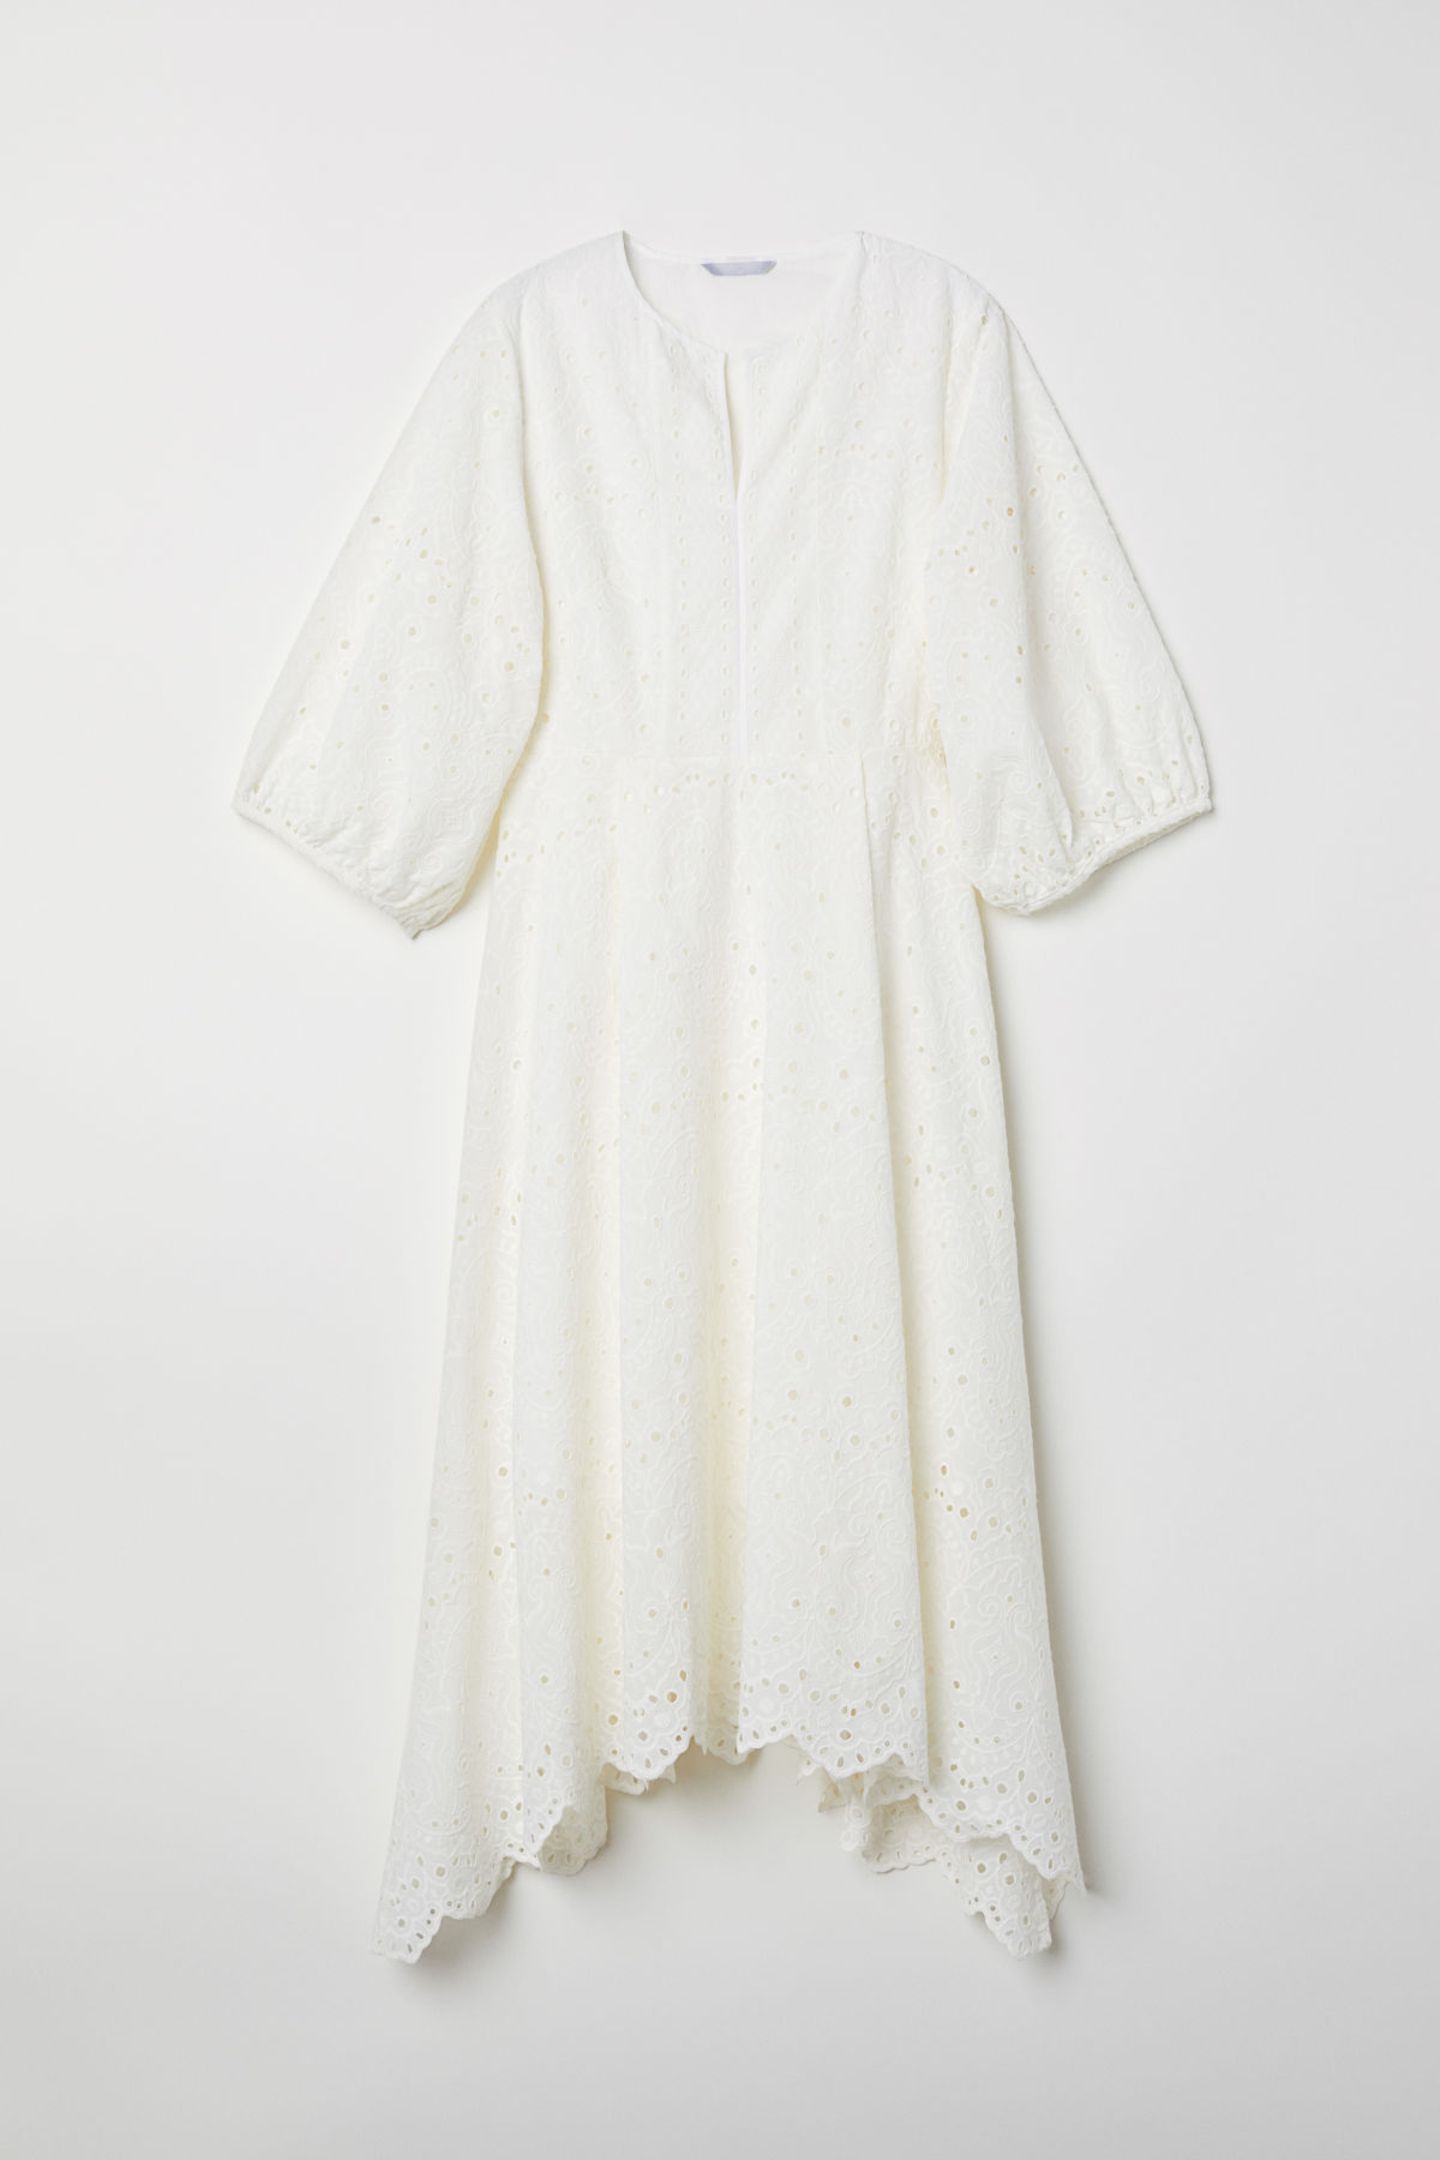 Royals, die günstige Kleidung tragen: Weißes Baumwollkleid von H&M